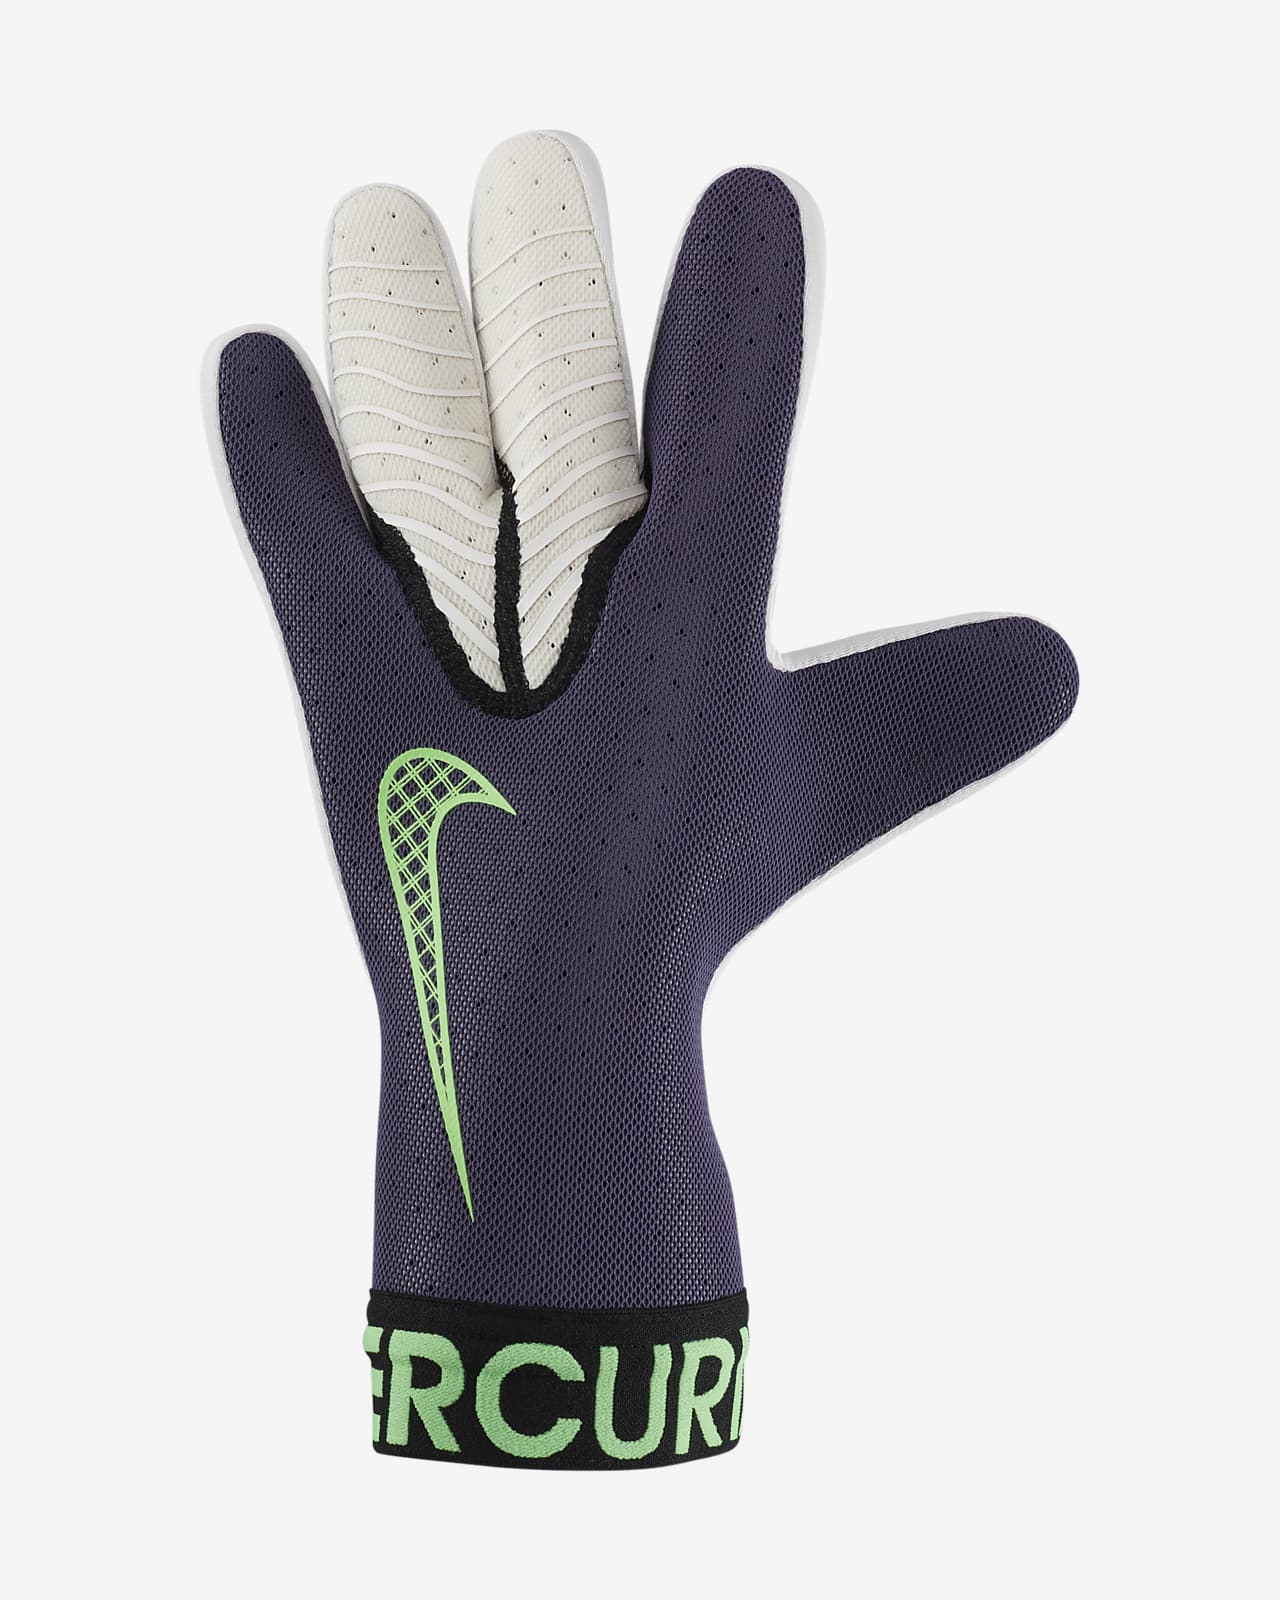 nike mercurial elite gloves